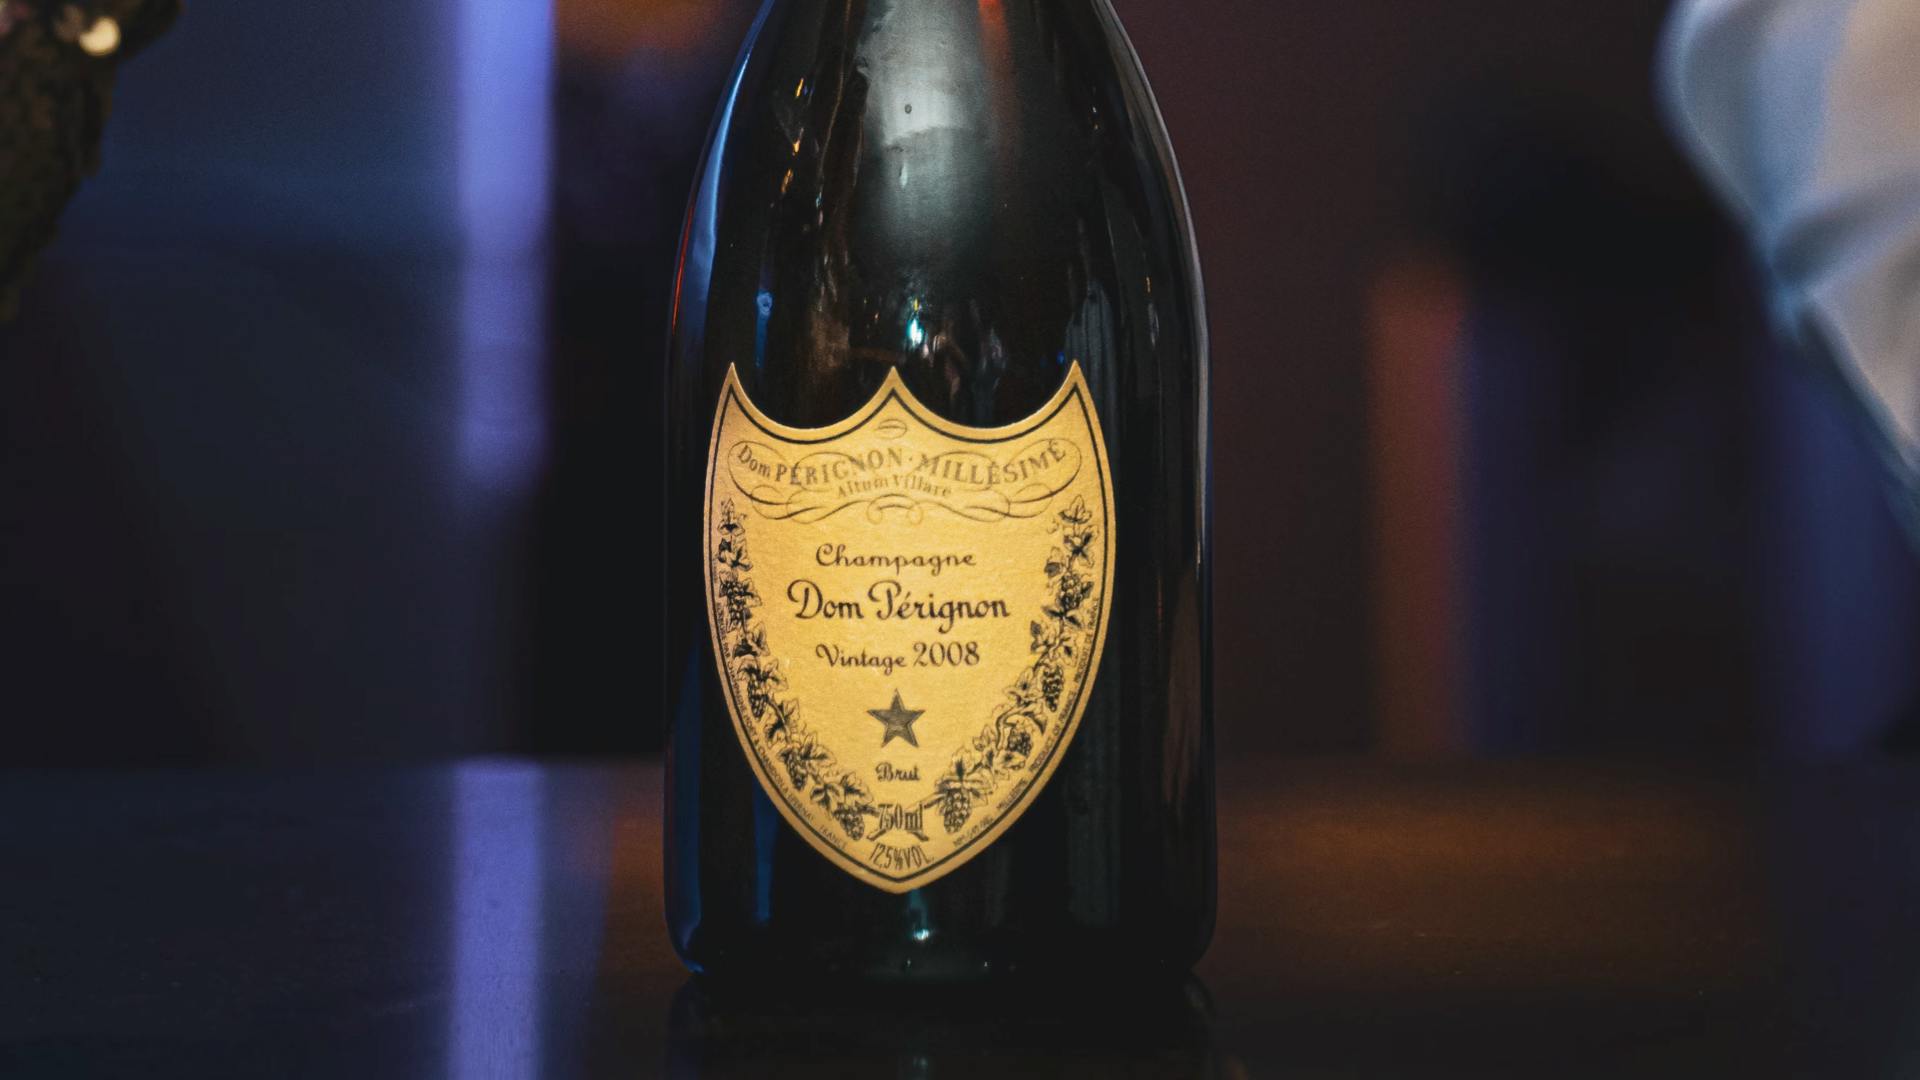 Dom Pérignon est un Champagne brut, donc sec.